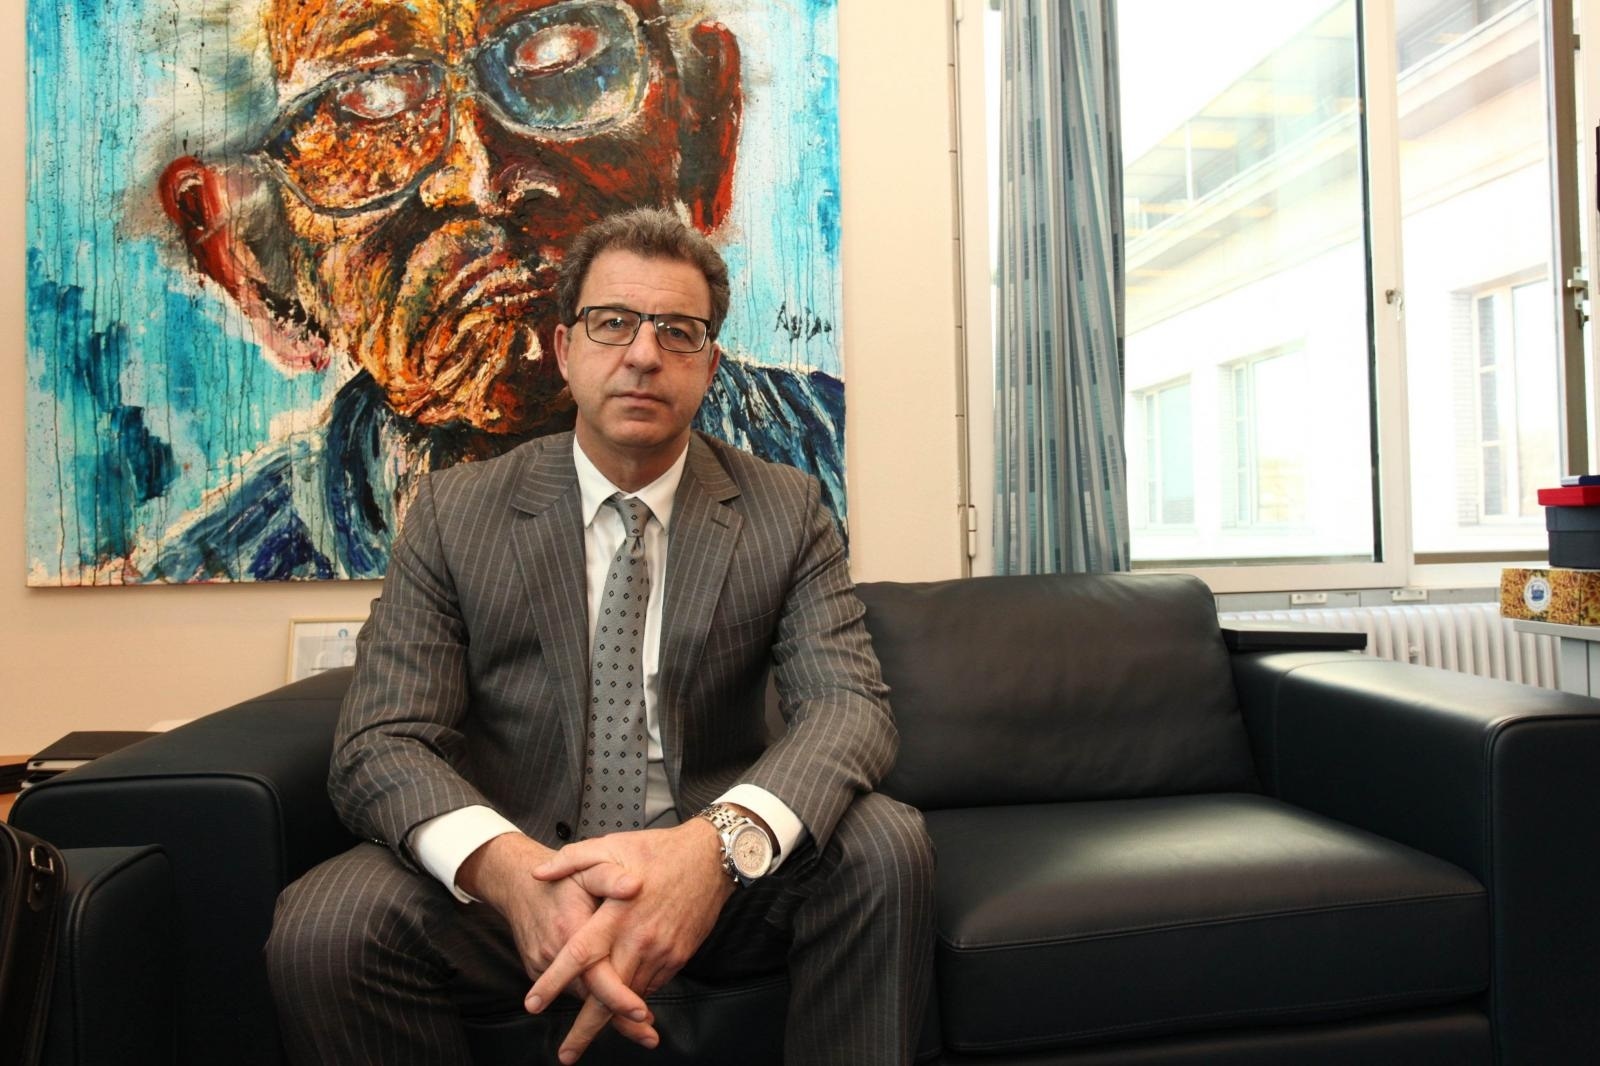 11.03.2014., Haag, Nizozemska - Serge Brammertz, glavni tuzitelj Medjunarodnog suda za bivsu Jugoslaviju u Haagu. Photo: Tomislav Krasnec/VLM/PIXSELL